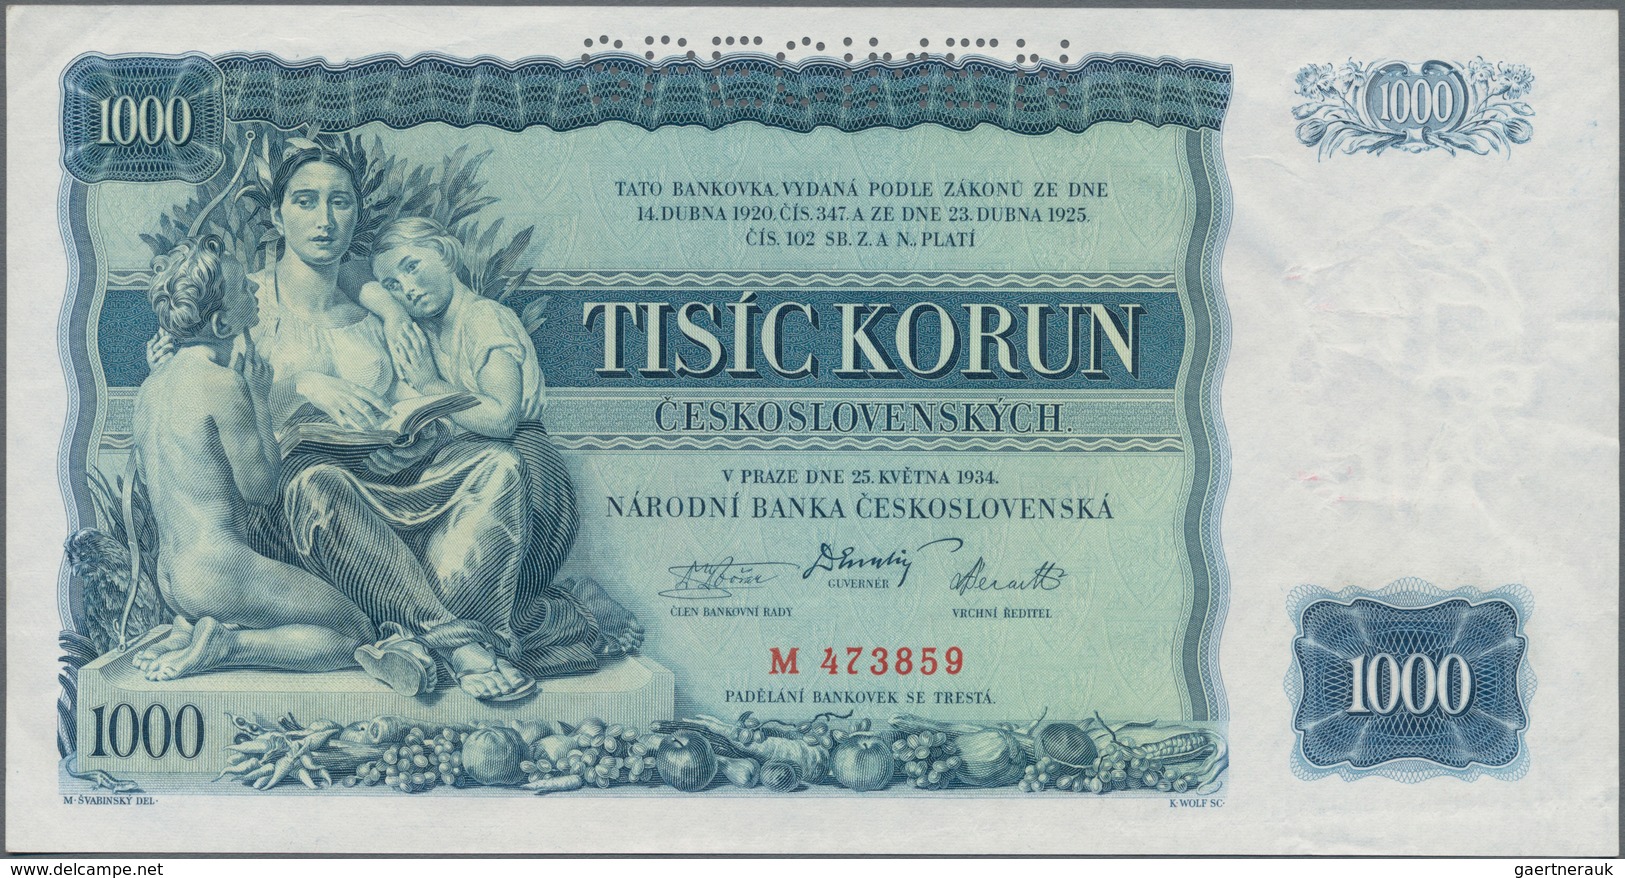 Czechoslovakia / Tschechoslowakei: Set With 4 Specimen Notes Containing Republika Československá 500 - Tchécoslovaquie